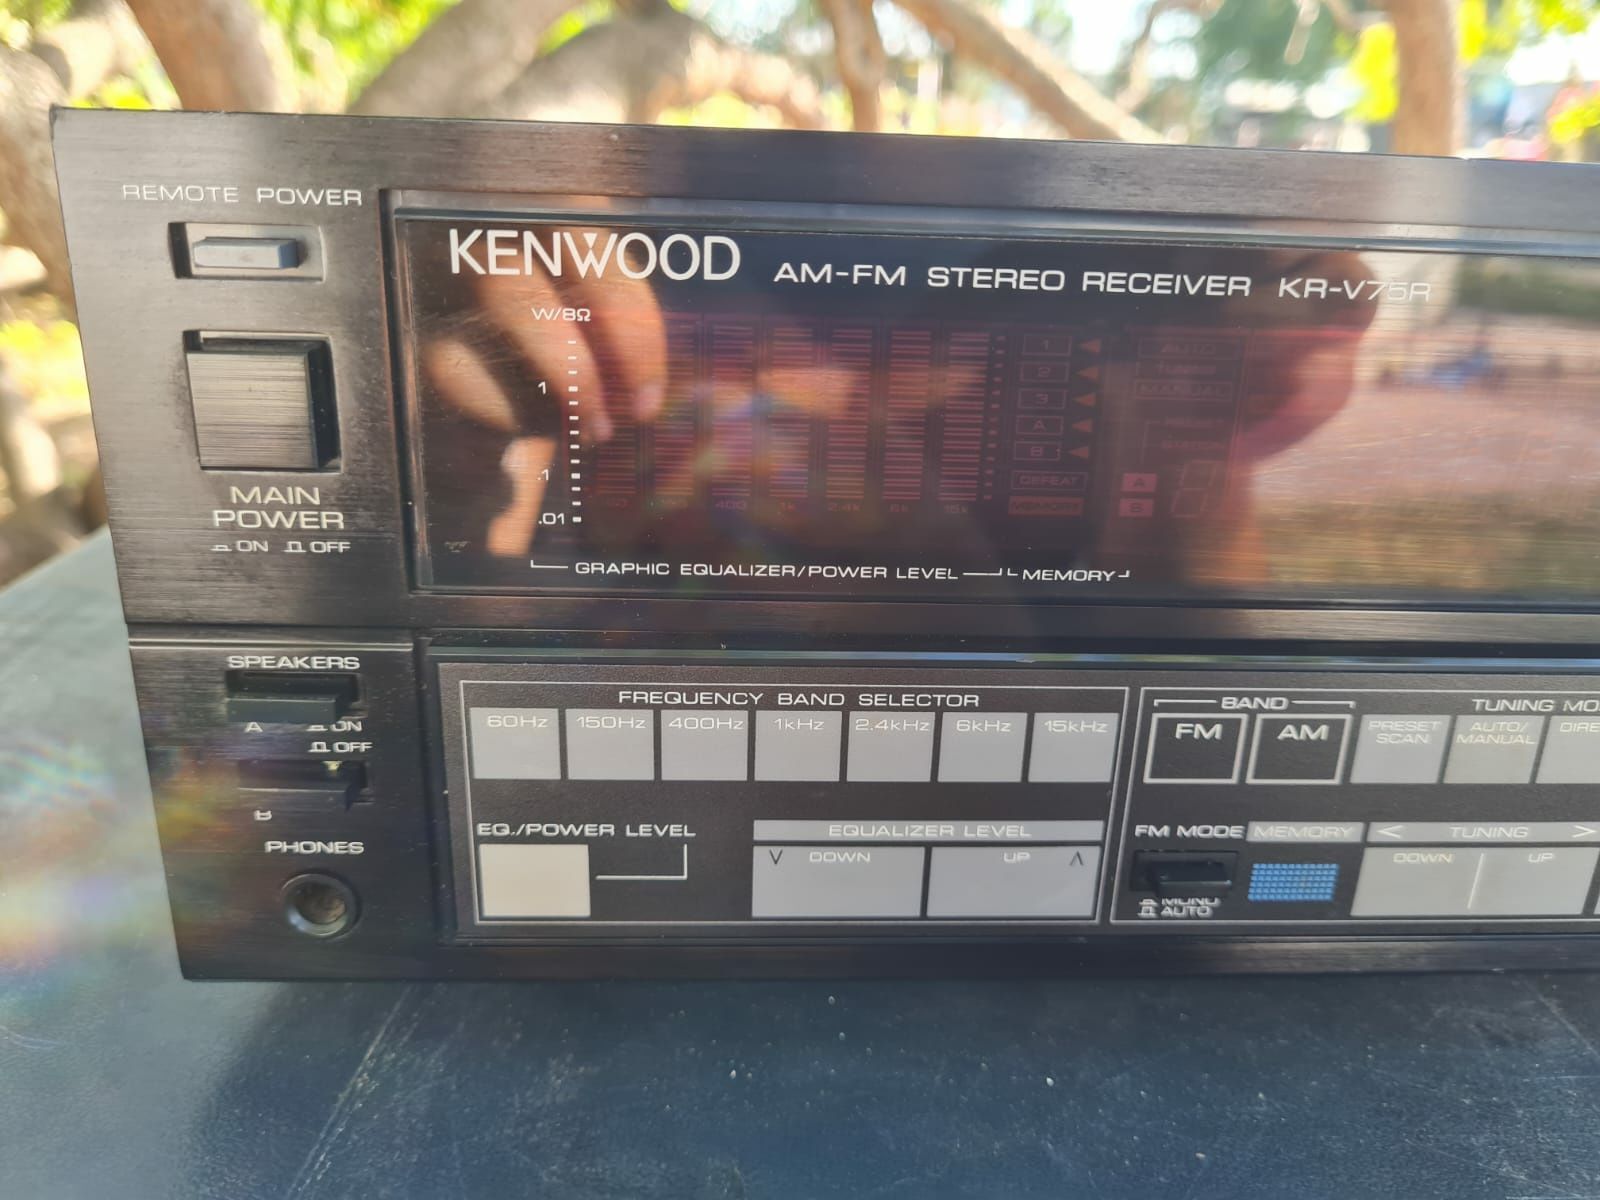 Amplituner Kenwood KR-V75R